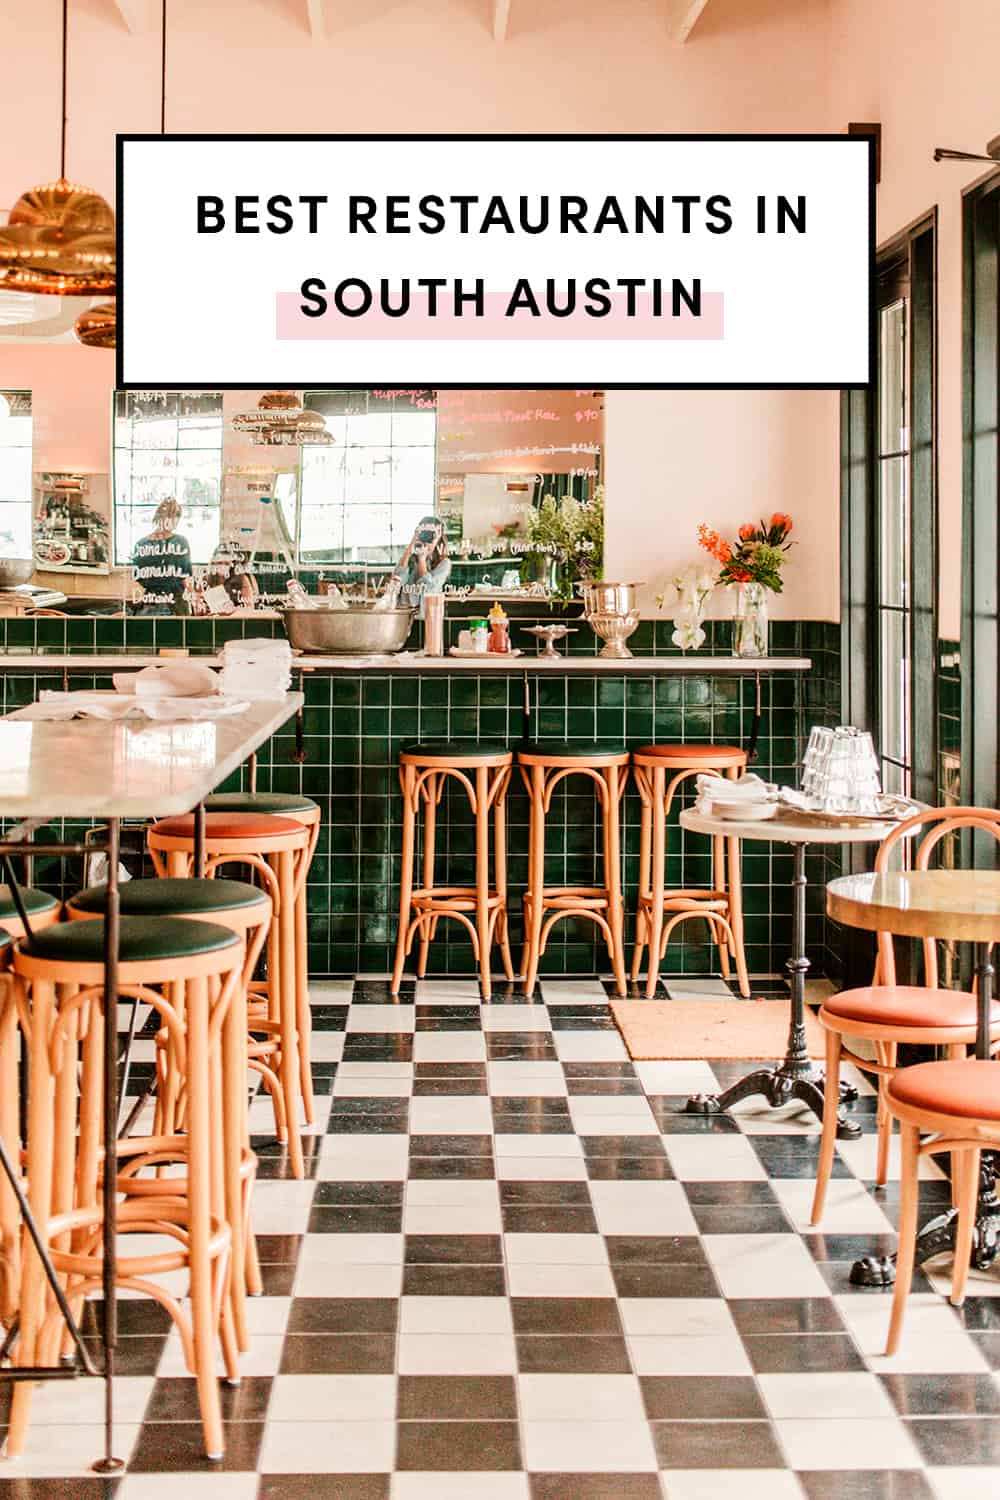 Best Restaurants in South Austin